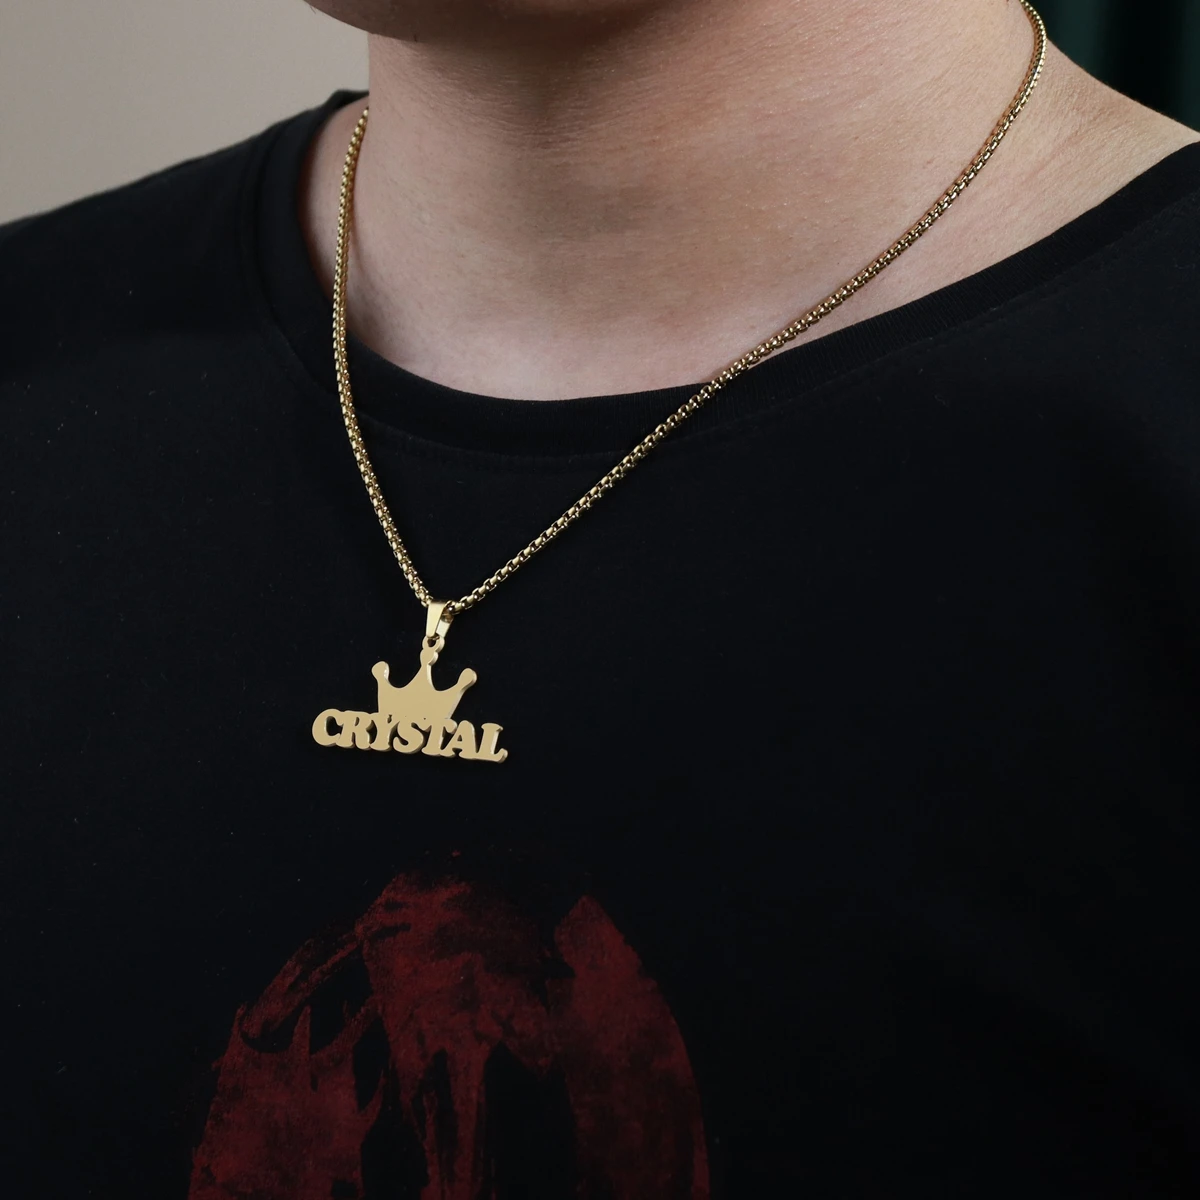 Ожерелье Atoztide с надписью хип-хоп двустороннее толстое плетеное колье Фигаро